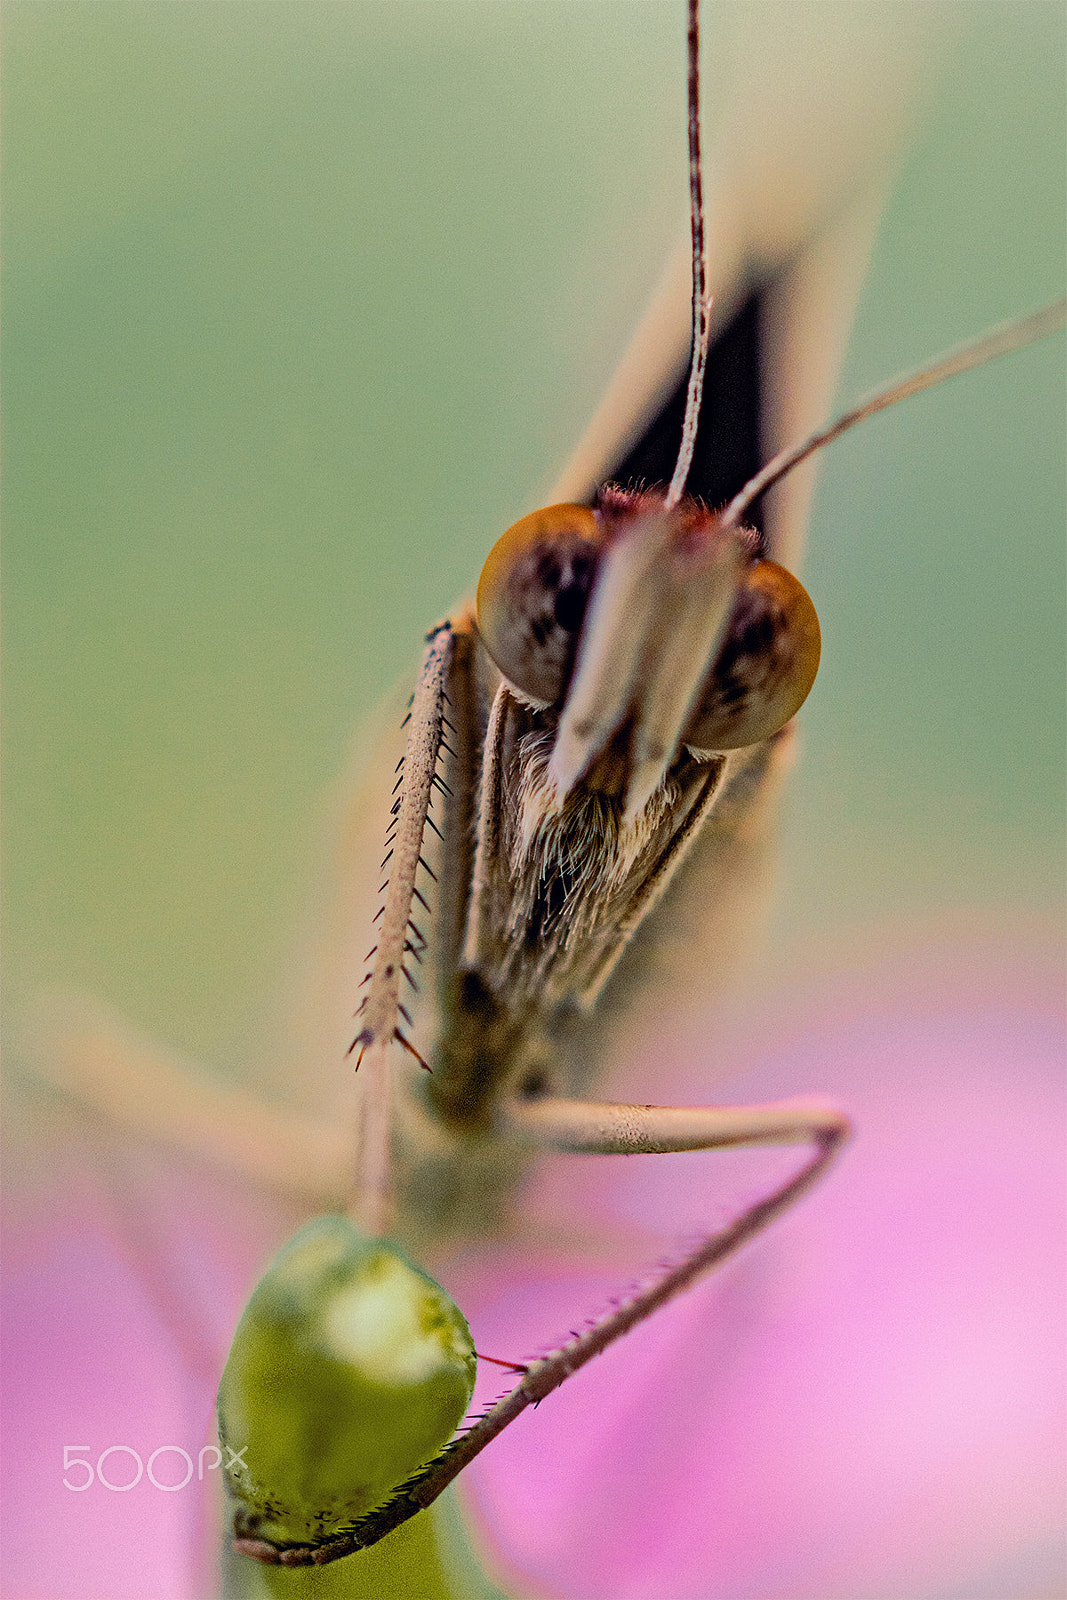 Nikon D7100 sample photo. Curiosa borboleta -curious butterfly photography